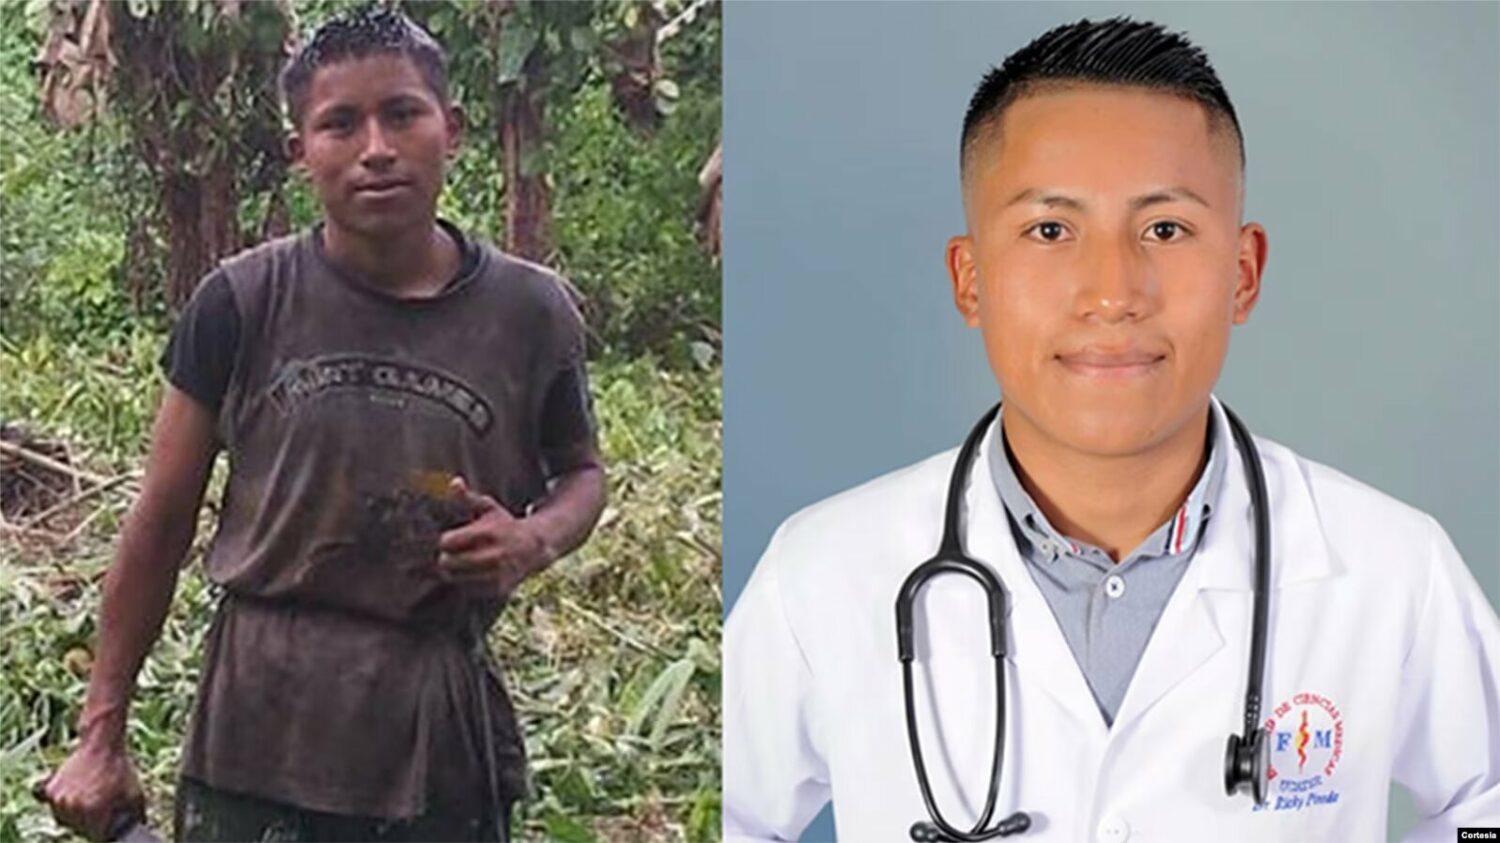 El joven Ricky Pineda, descendiente del pueblo indígena Mayangna, quiso primero ser sacerdote, pero luego decidió estudiar y ejercer como médico. FotoCortesia